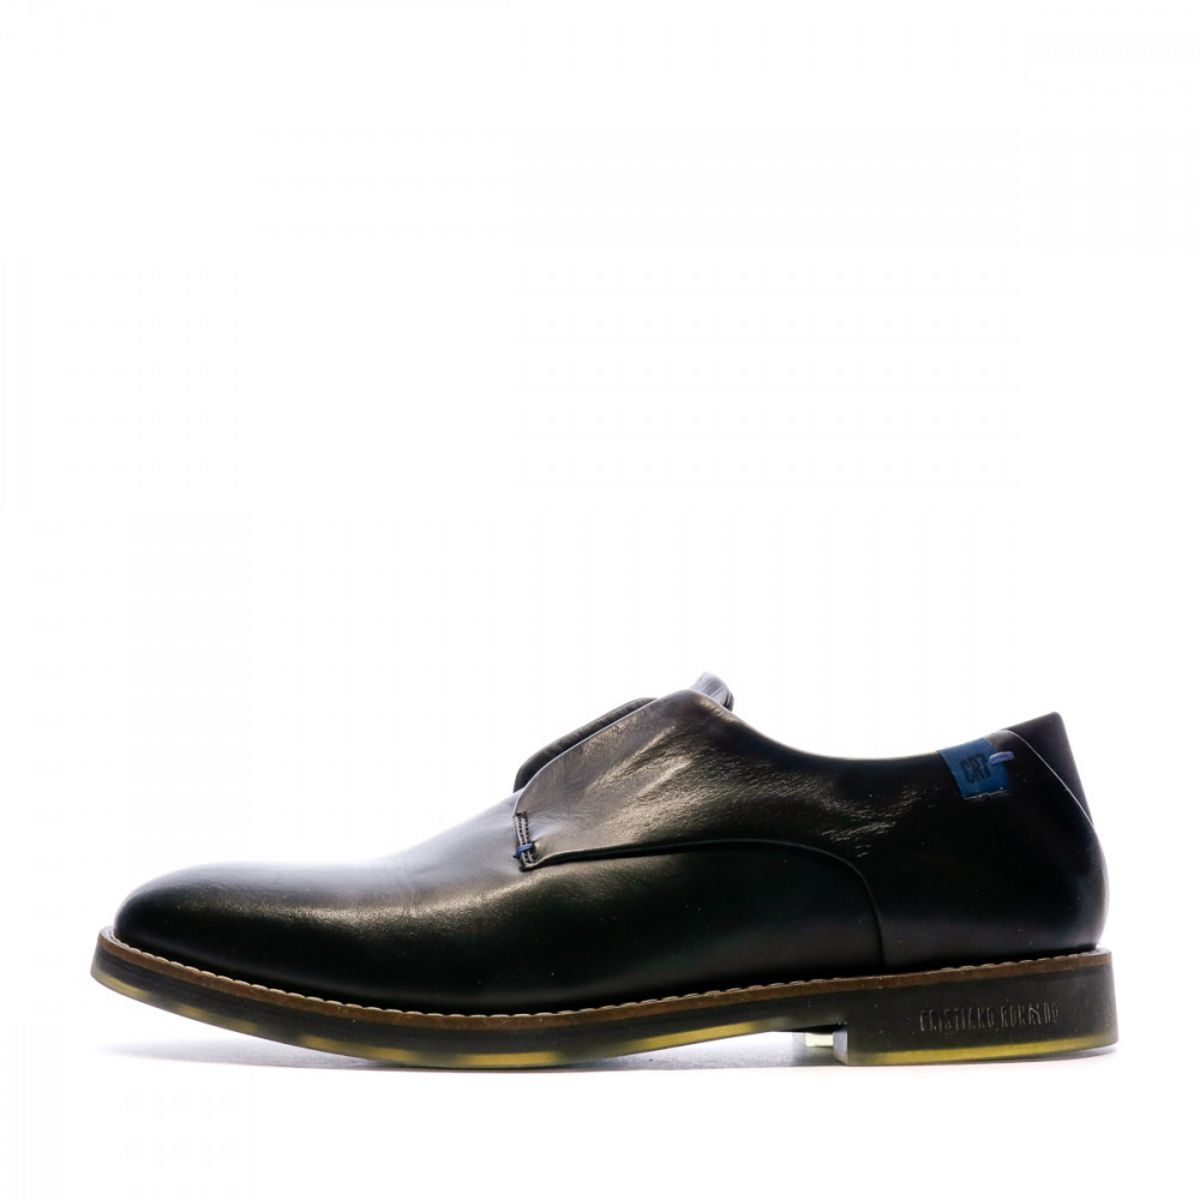  Chaussures de ville Noires Homme CR7 Lagos